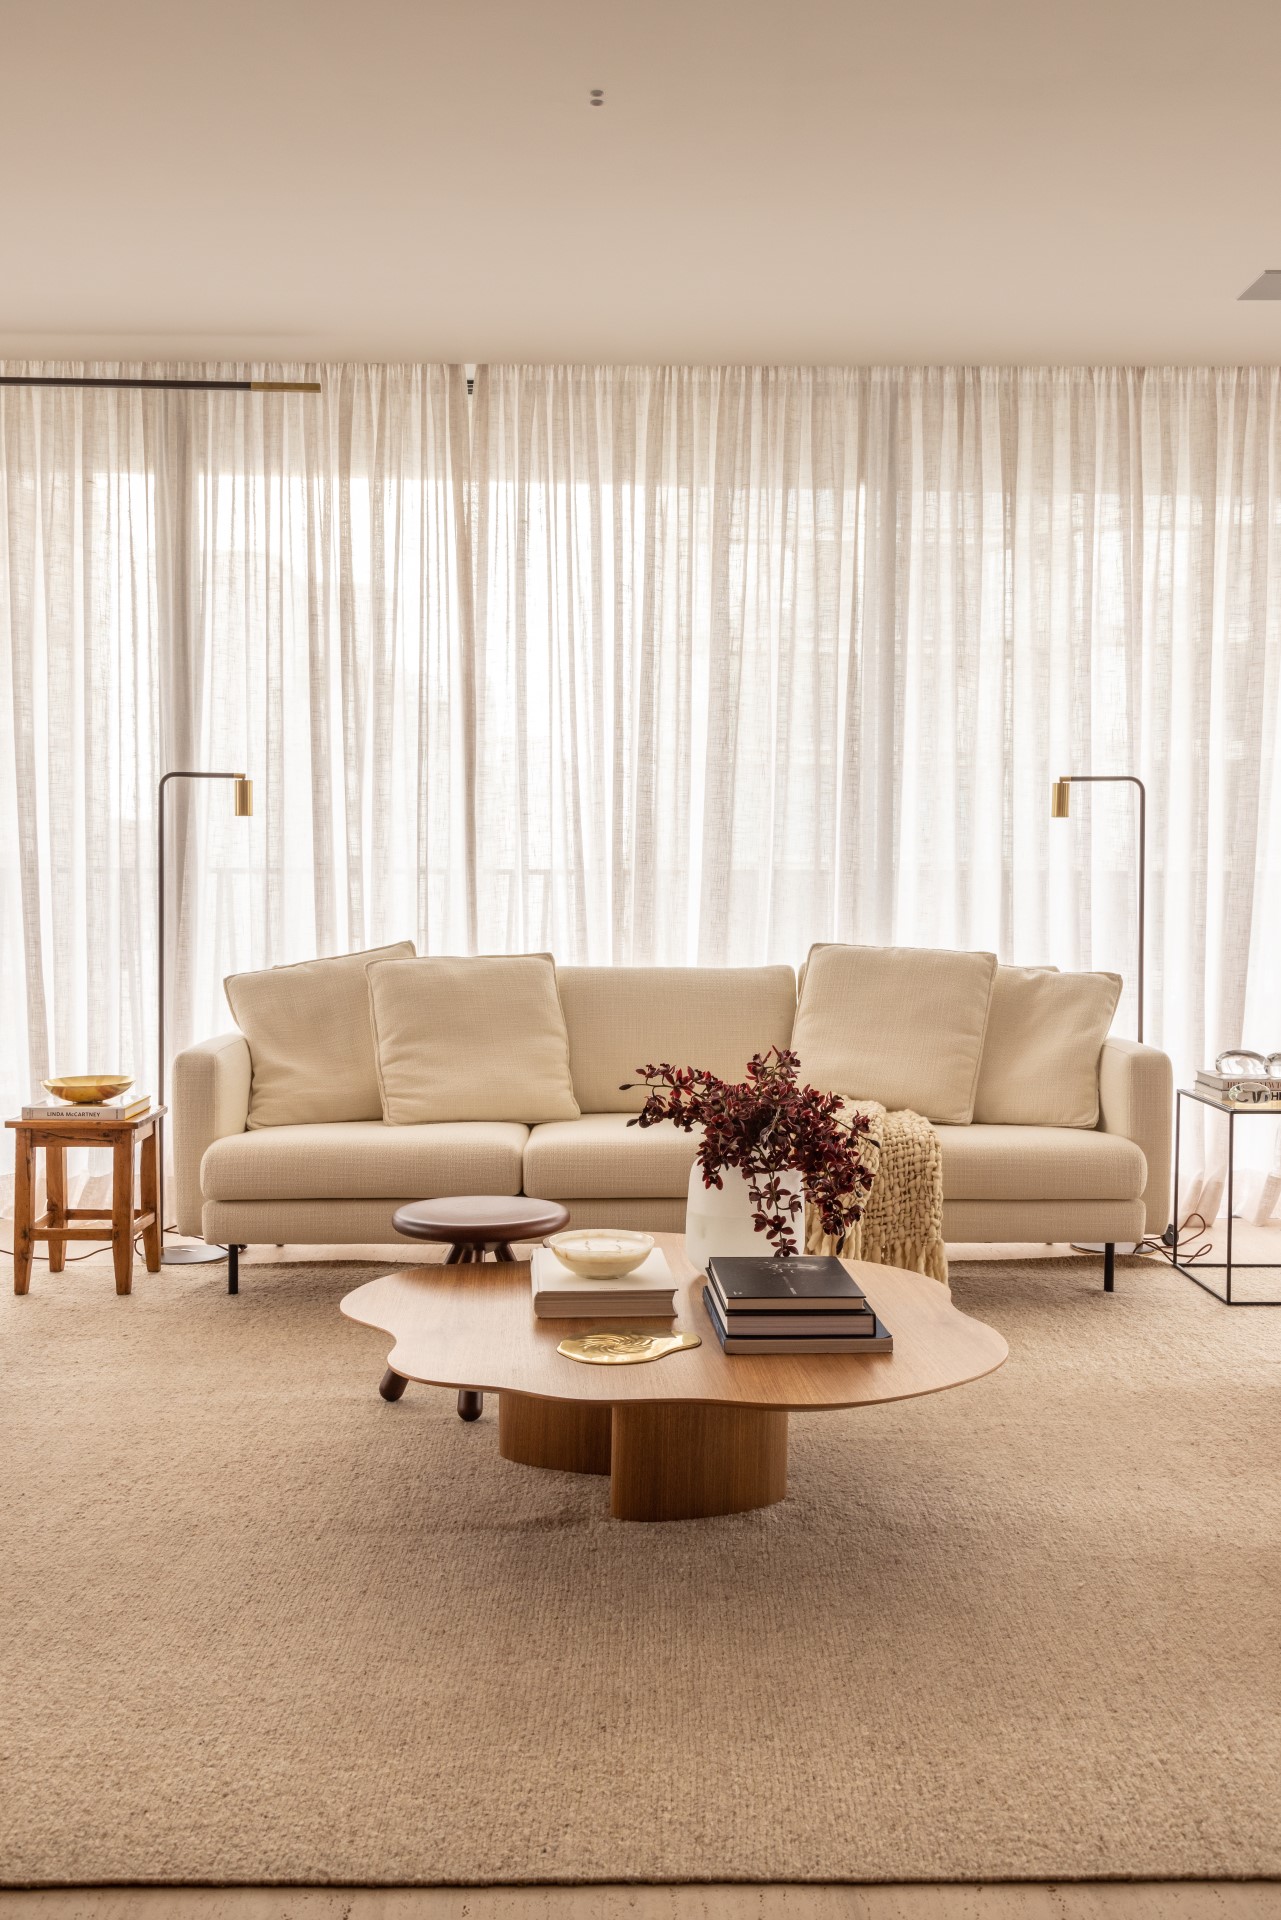 Projeto de Denise Polverini e Fernanda Villefort. Na foto, sala de estar em tons beges com tapete, mesa de centro de madeira e sofá branco.